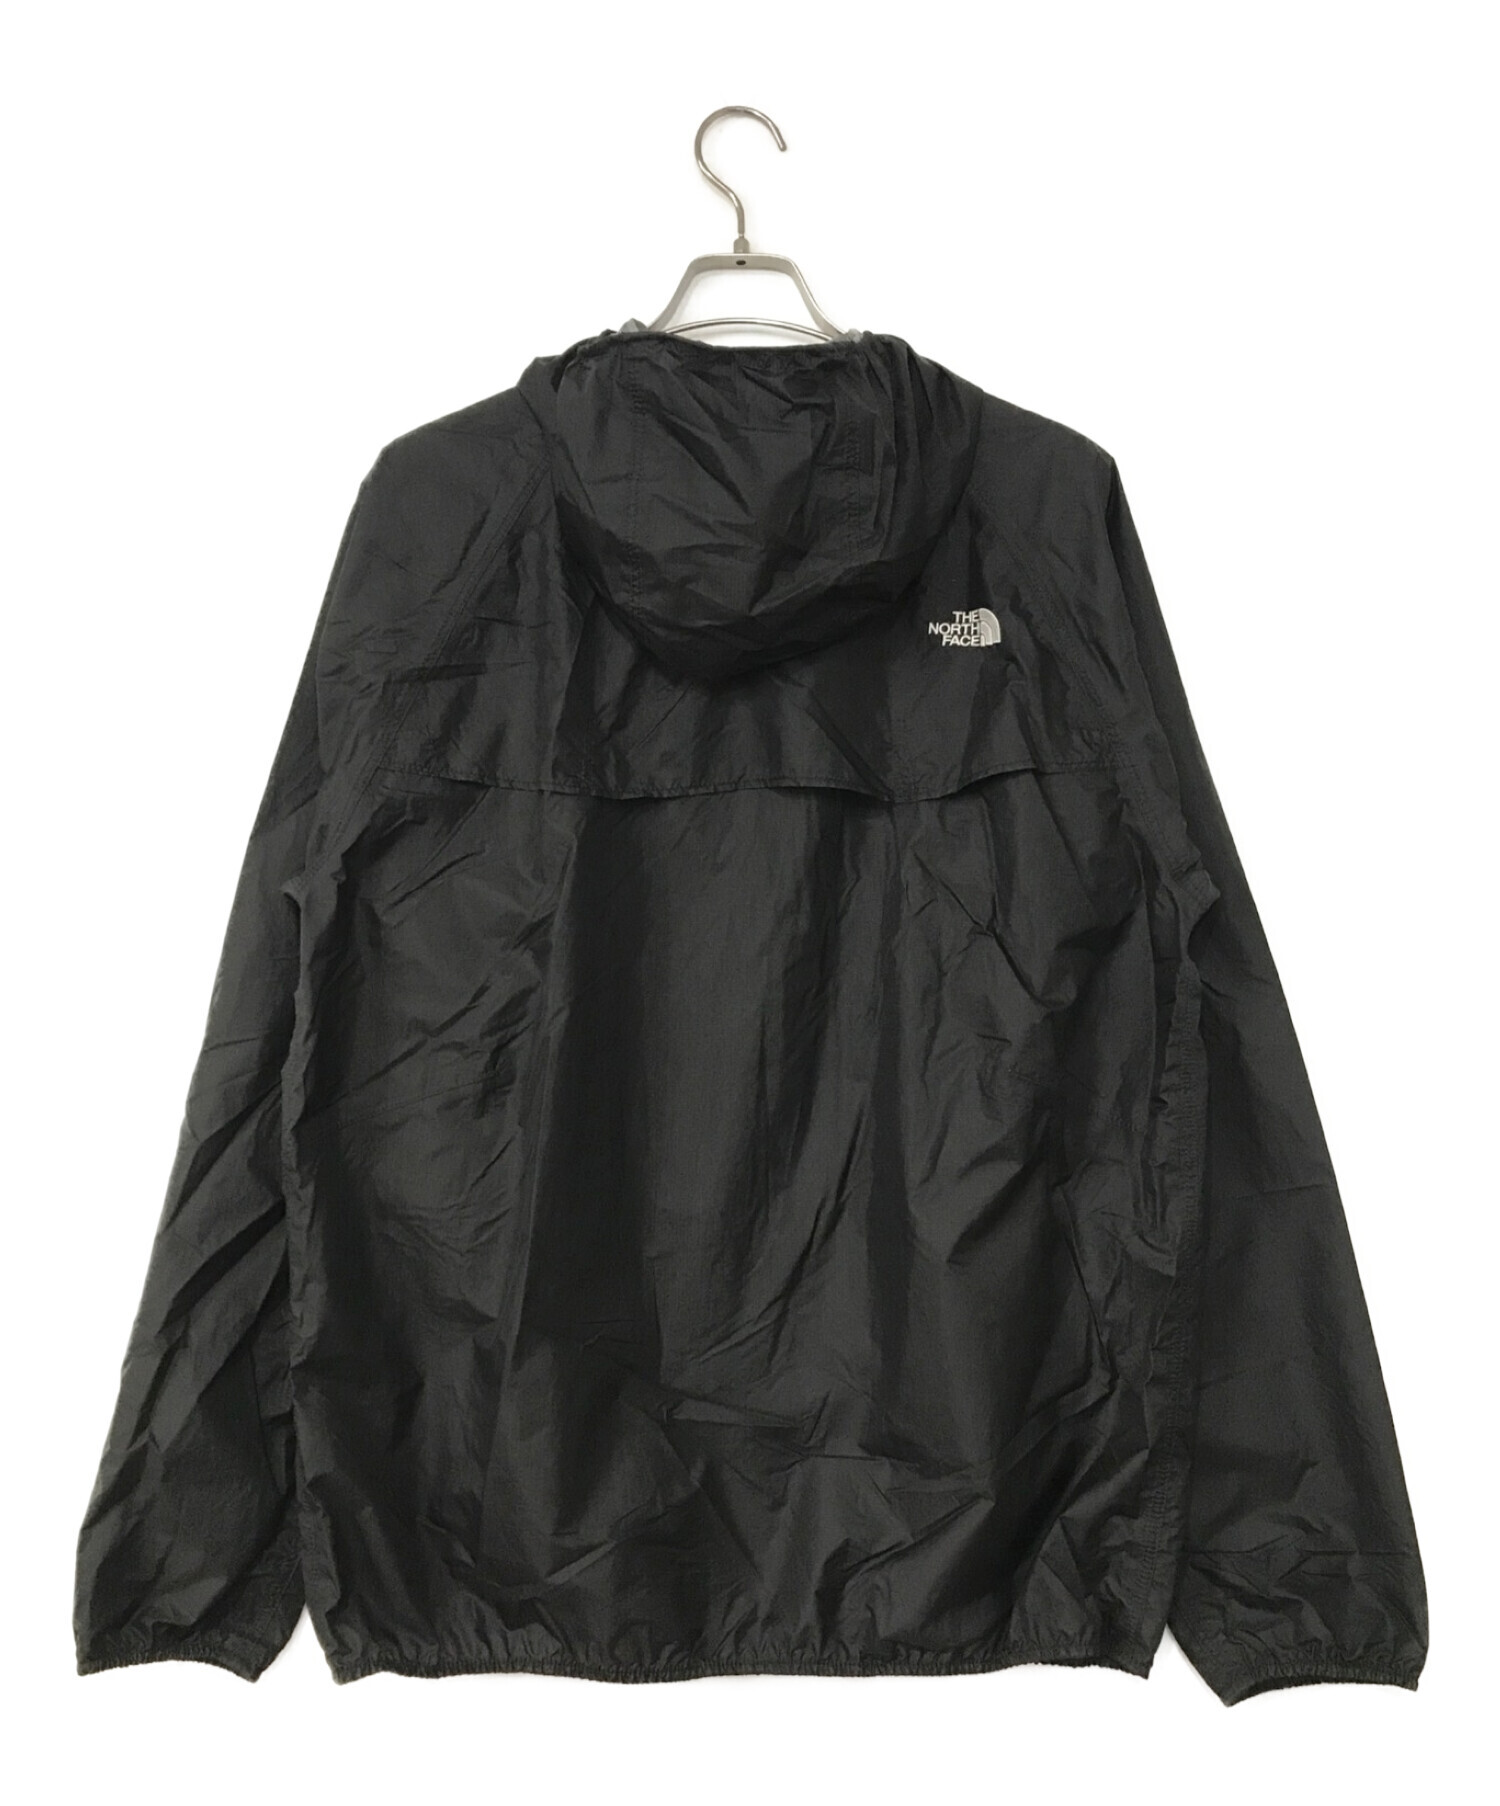 THE NORTH FACE (ザ ノース フェイス) フリーランストリームジャケット ブラック サイズ:XL